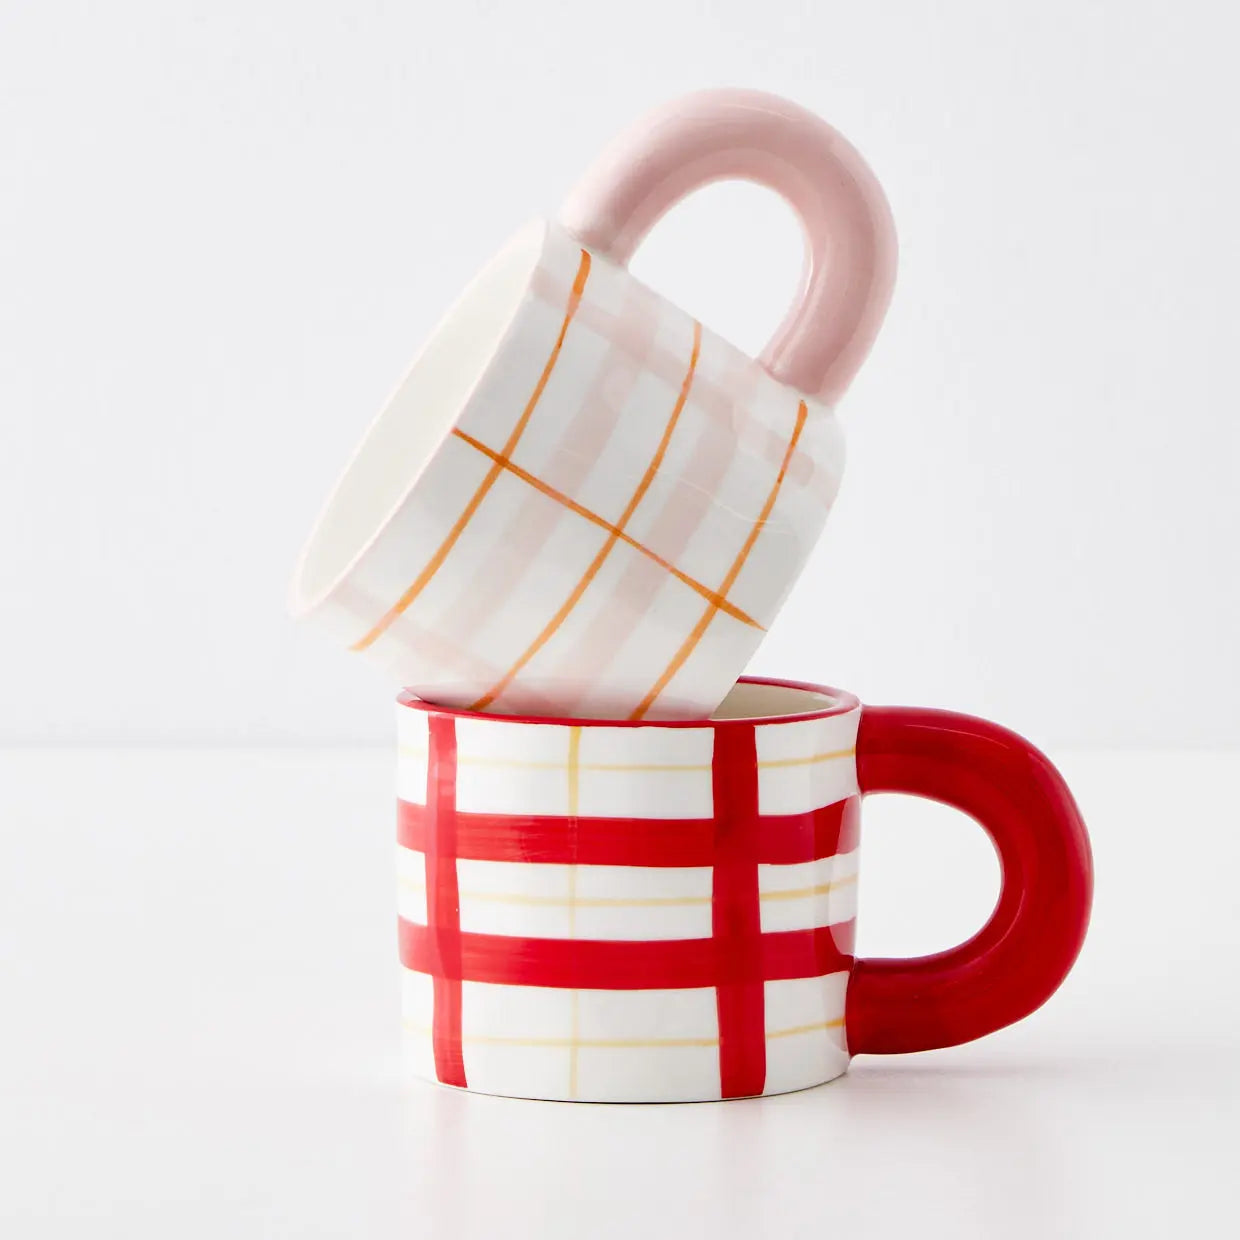 Picnic Plaid Ceramic Mug Red - GigiandTom